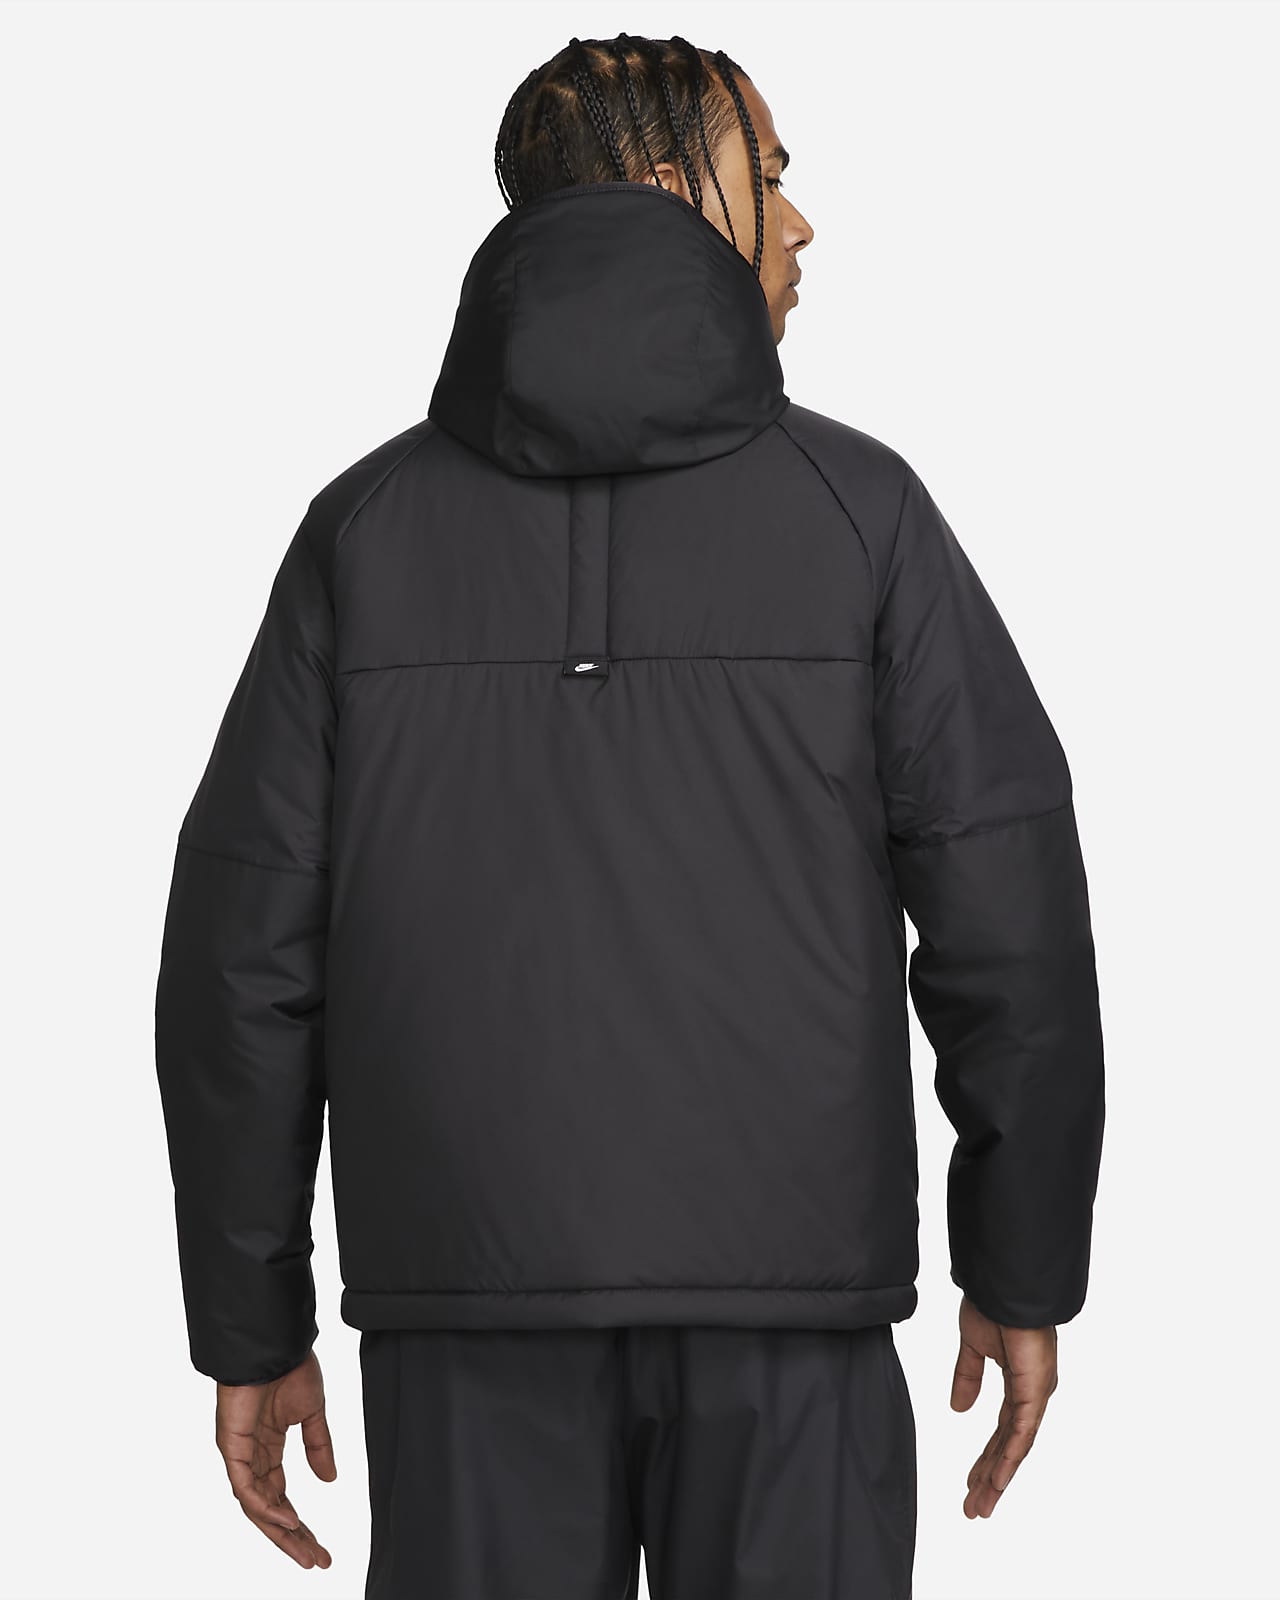 Nike Sportswear Therma-FIT Legacy Men's Hooded Jacket.